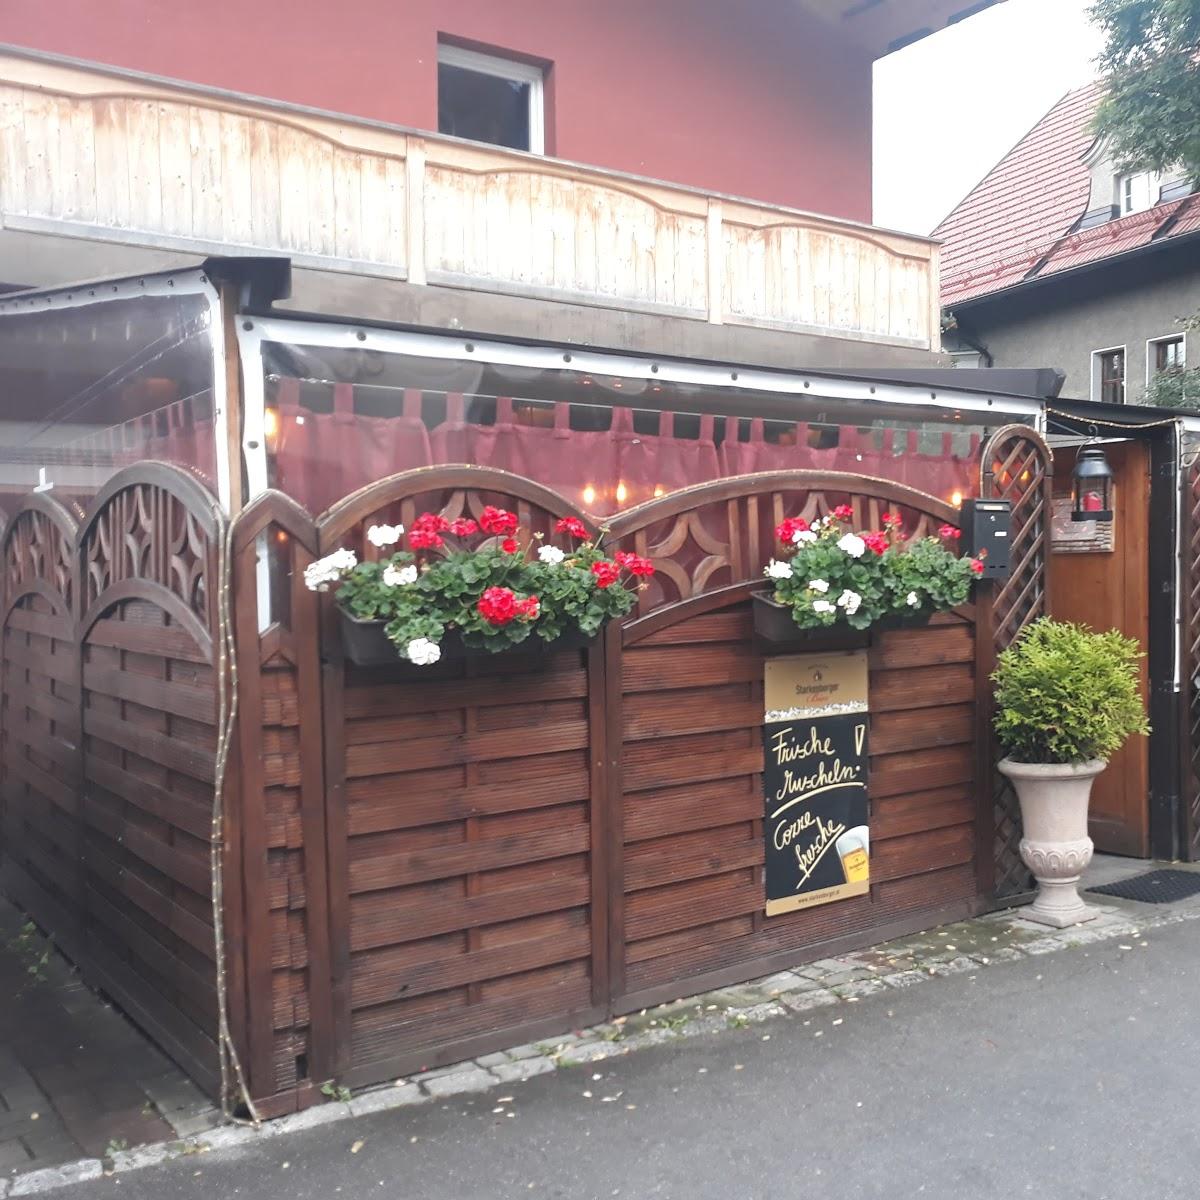 Restaurant "Ristorante Pizzeria da Giovanni" in Innsbruck